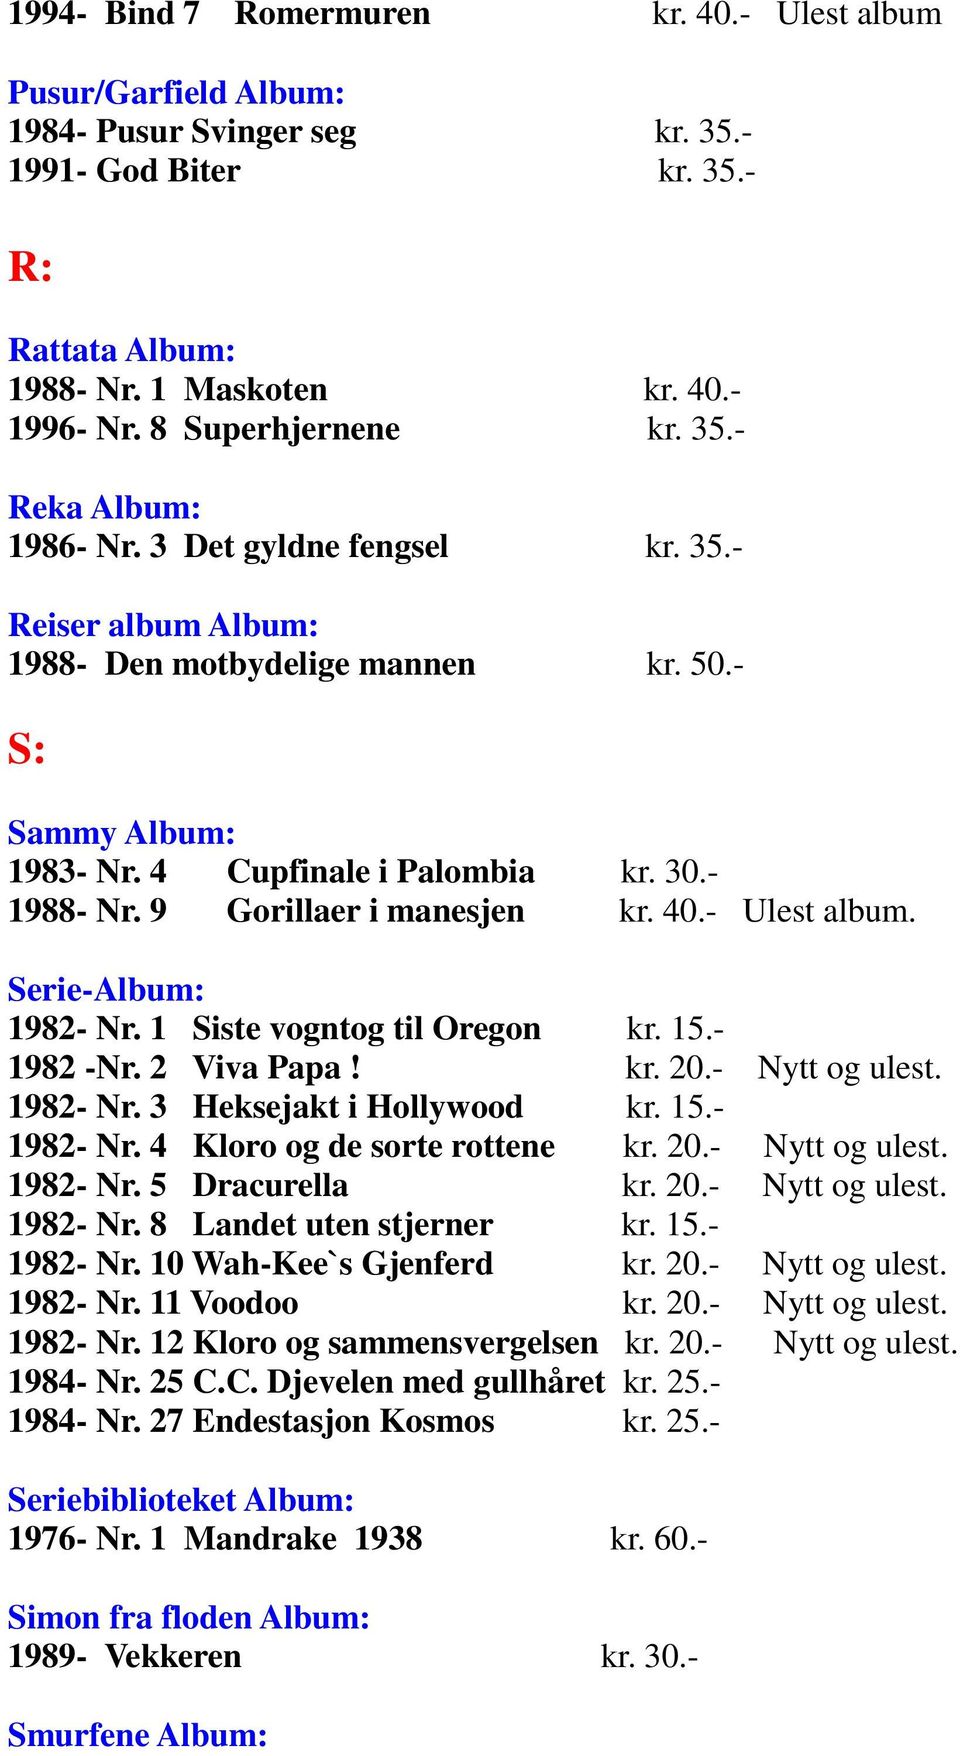 - 1988- Nr. 9 Gorillaer i manesjen kr. 40.- Ulest album. Serie-Album: 1982- Nr. 1 Siste vogntog til Oregon kr. 15.- 1982 -Nr. 2 Viva Papa! kr. 20.- Nytt og ulest. 1982- Nr. 3 Heksejakt i Hollywood kr.